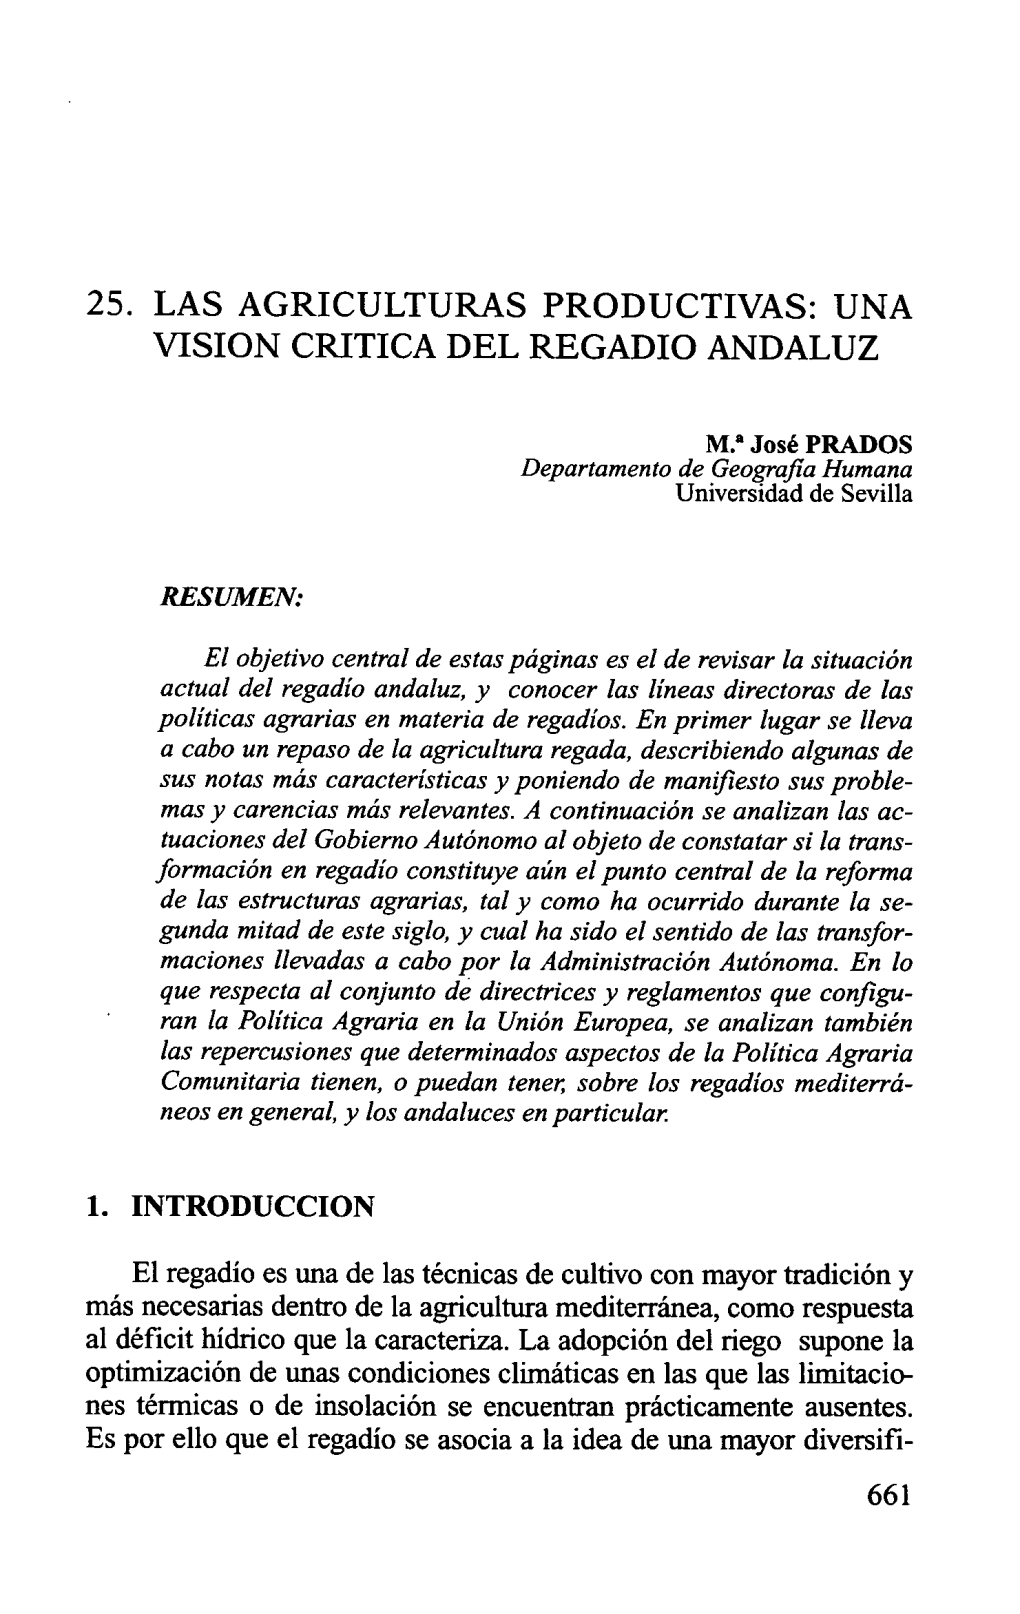 25. Las Agriculturas Productivas: Una Visión Crítica Del Regadío Andaluz